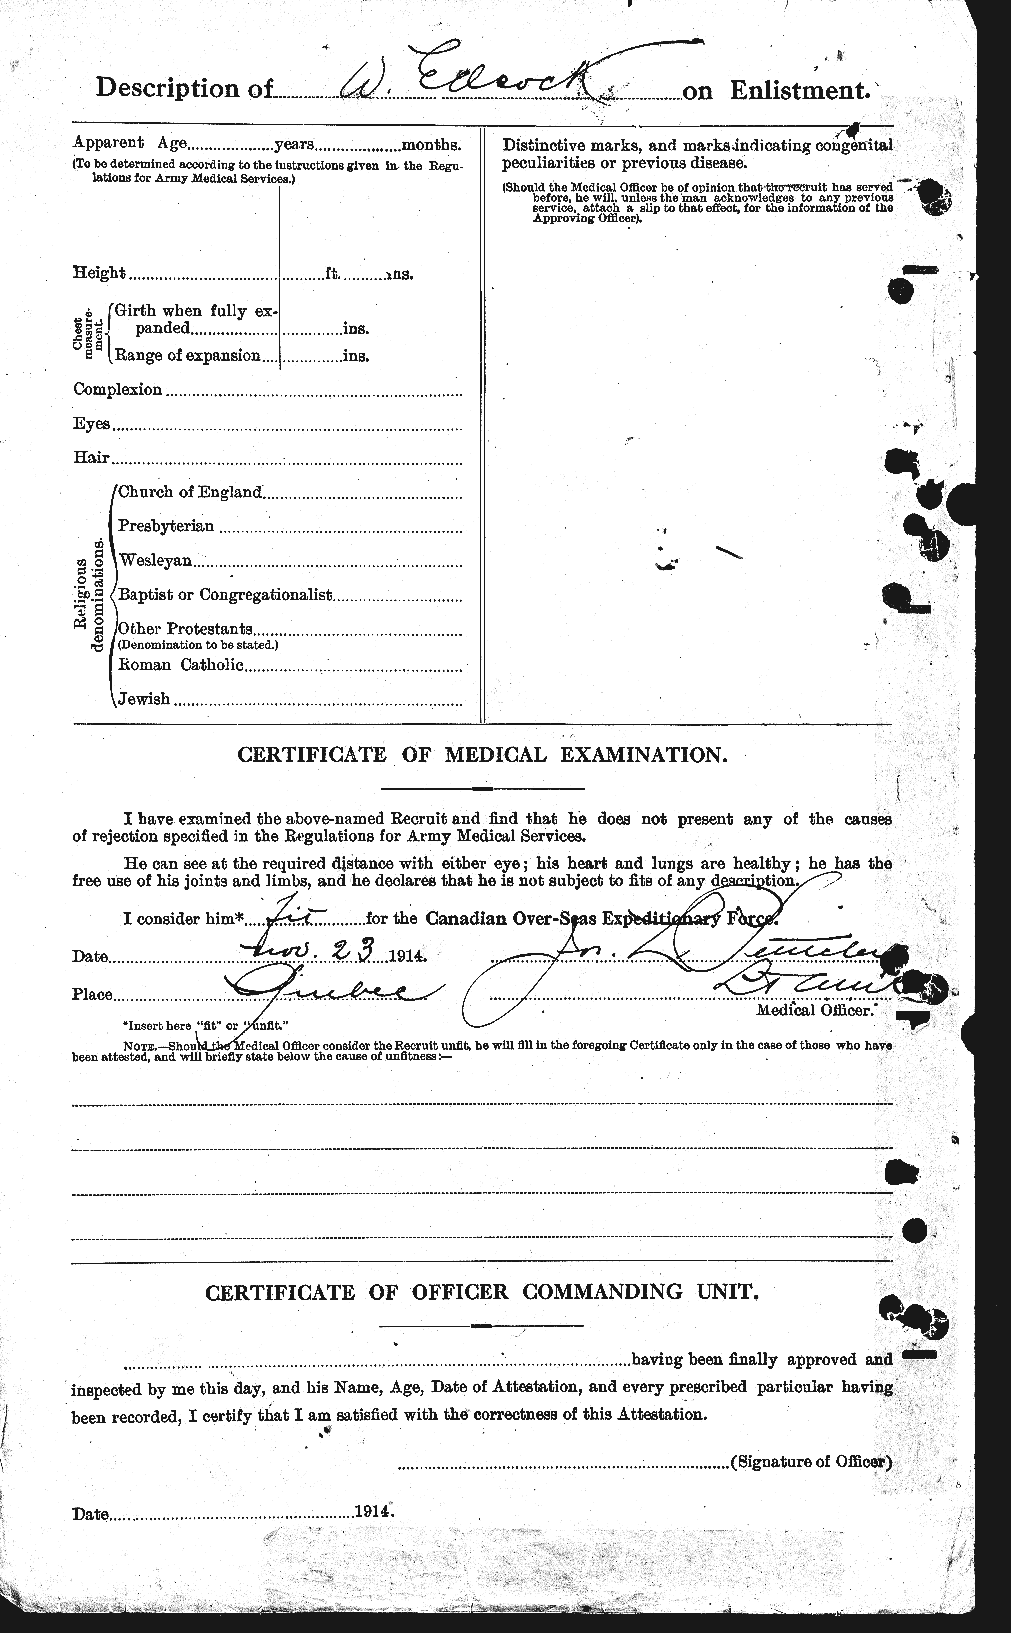 Dossiers du Personnel de la Première Guerre mondiale - CEC 202438b